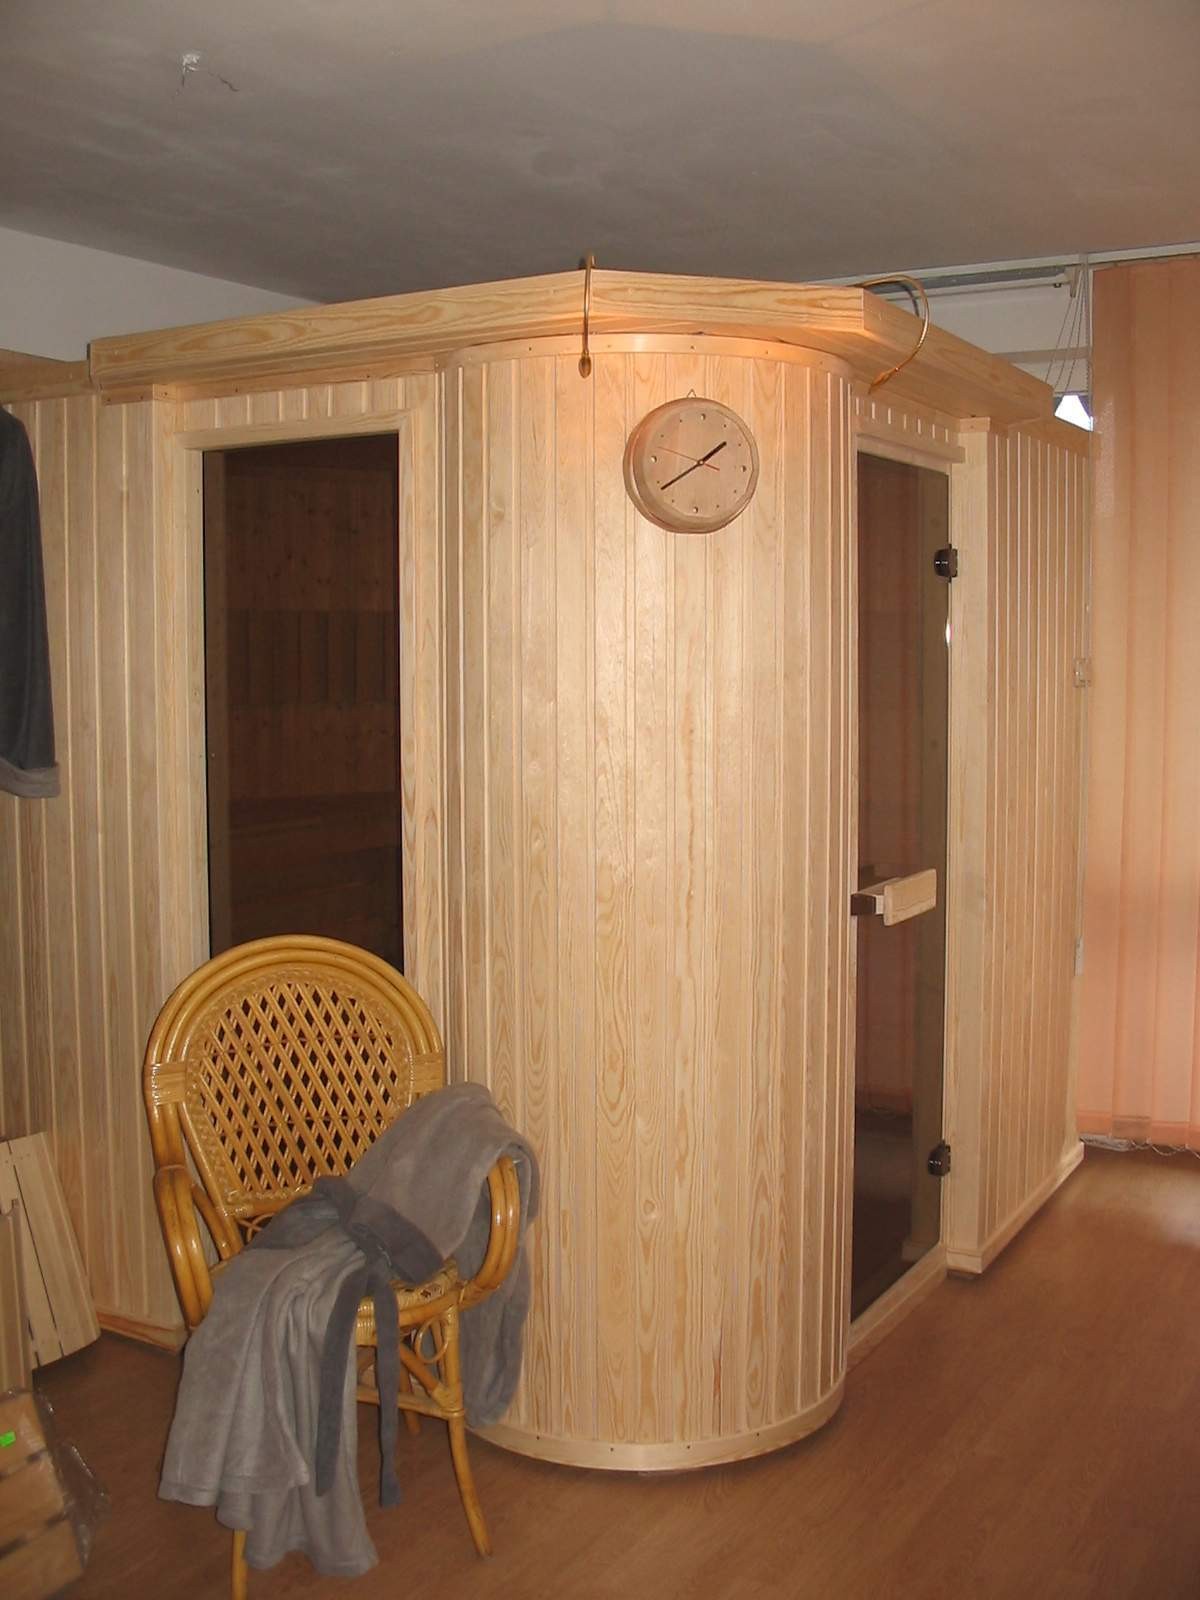 idealnie symetryczna względem przekątnej, wyokrąglona kabina sauny